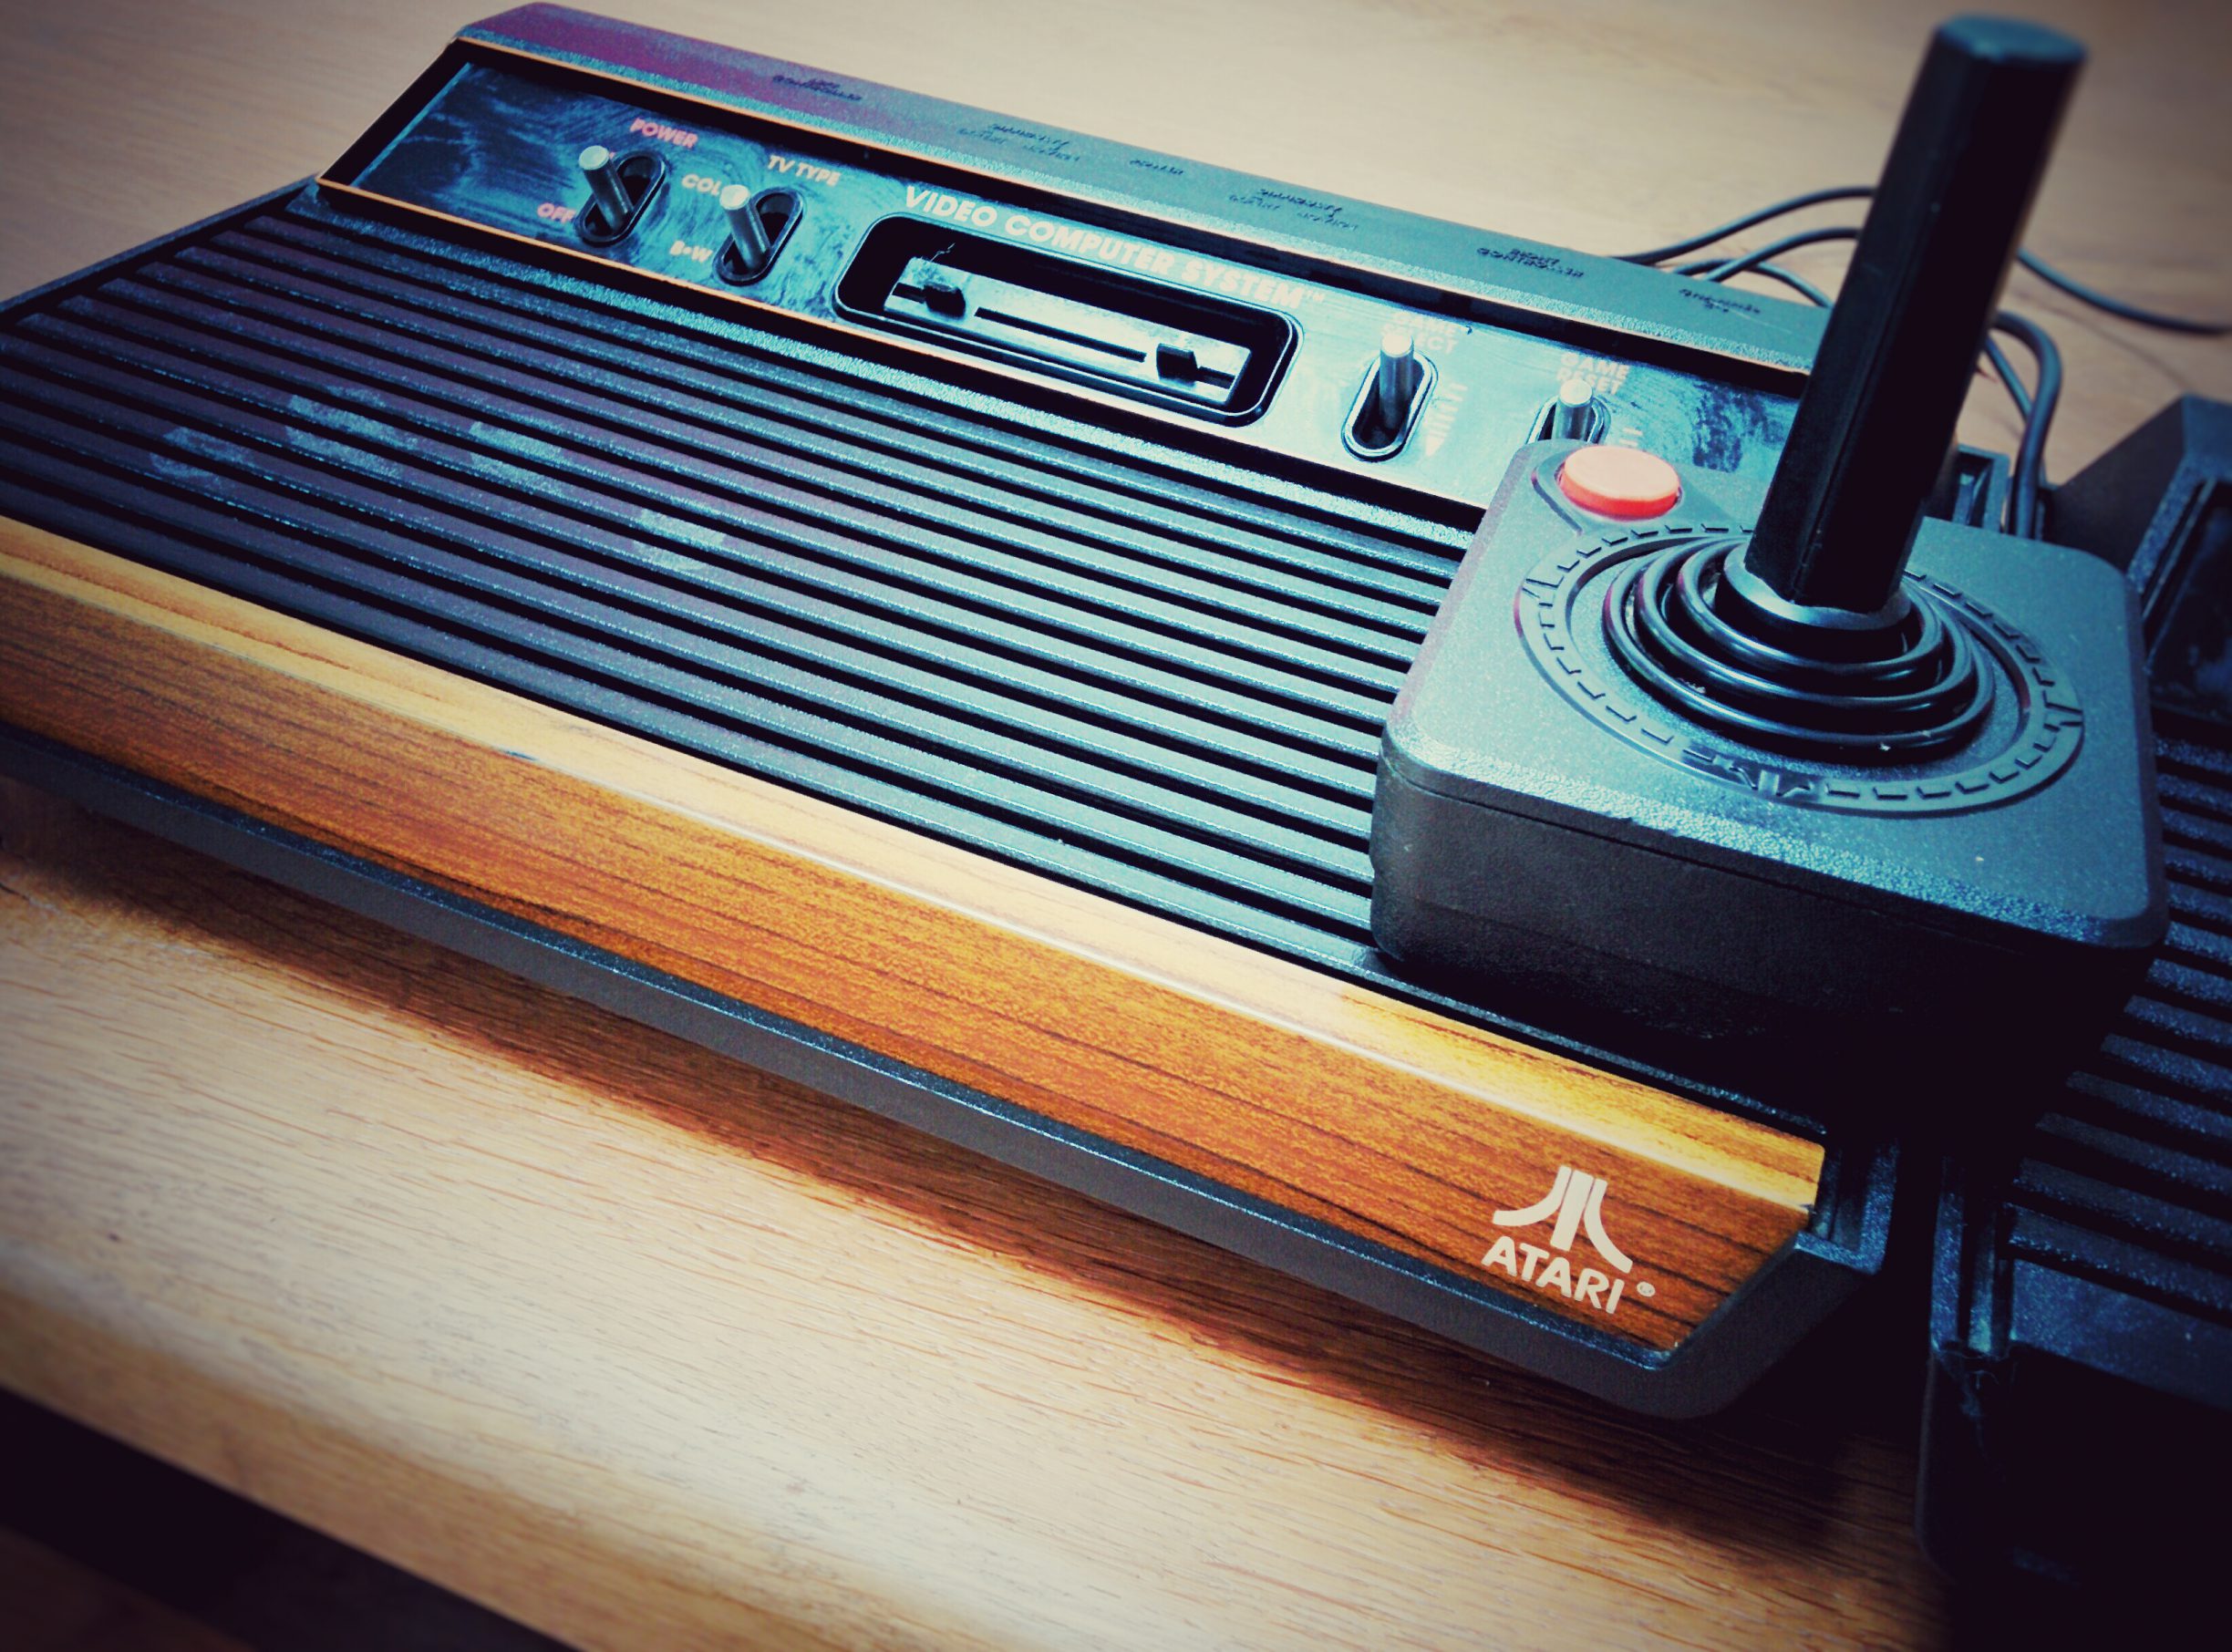 Woody - Atari 2600 - 4 switchs - Woodbox